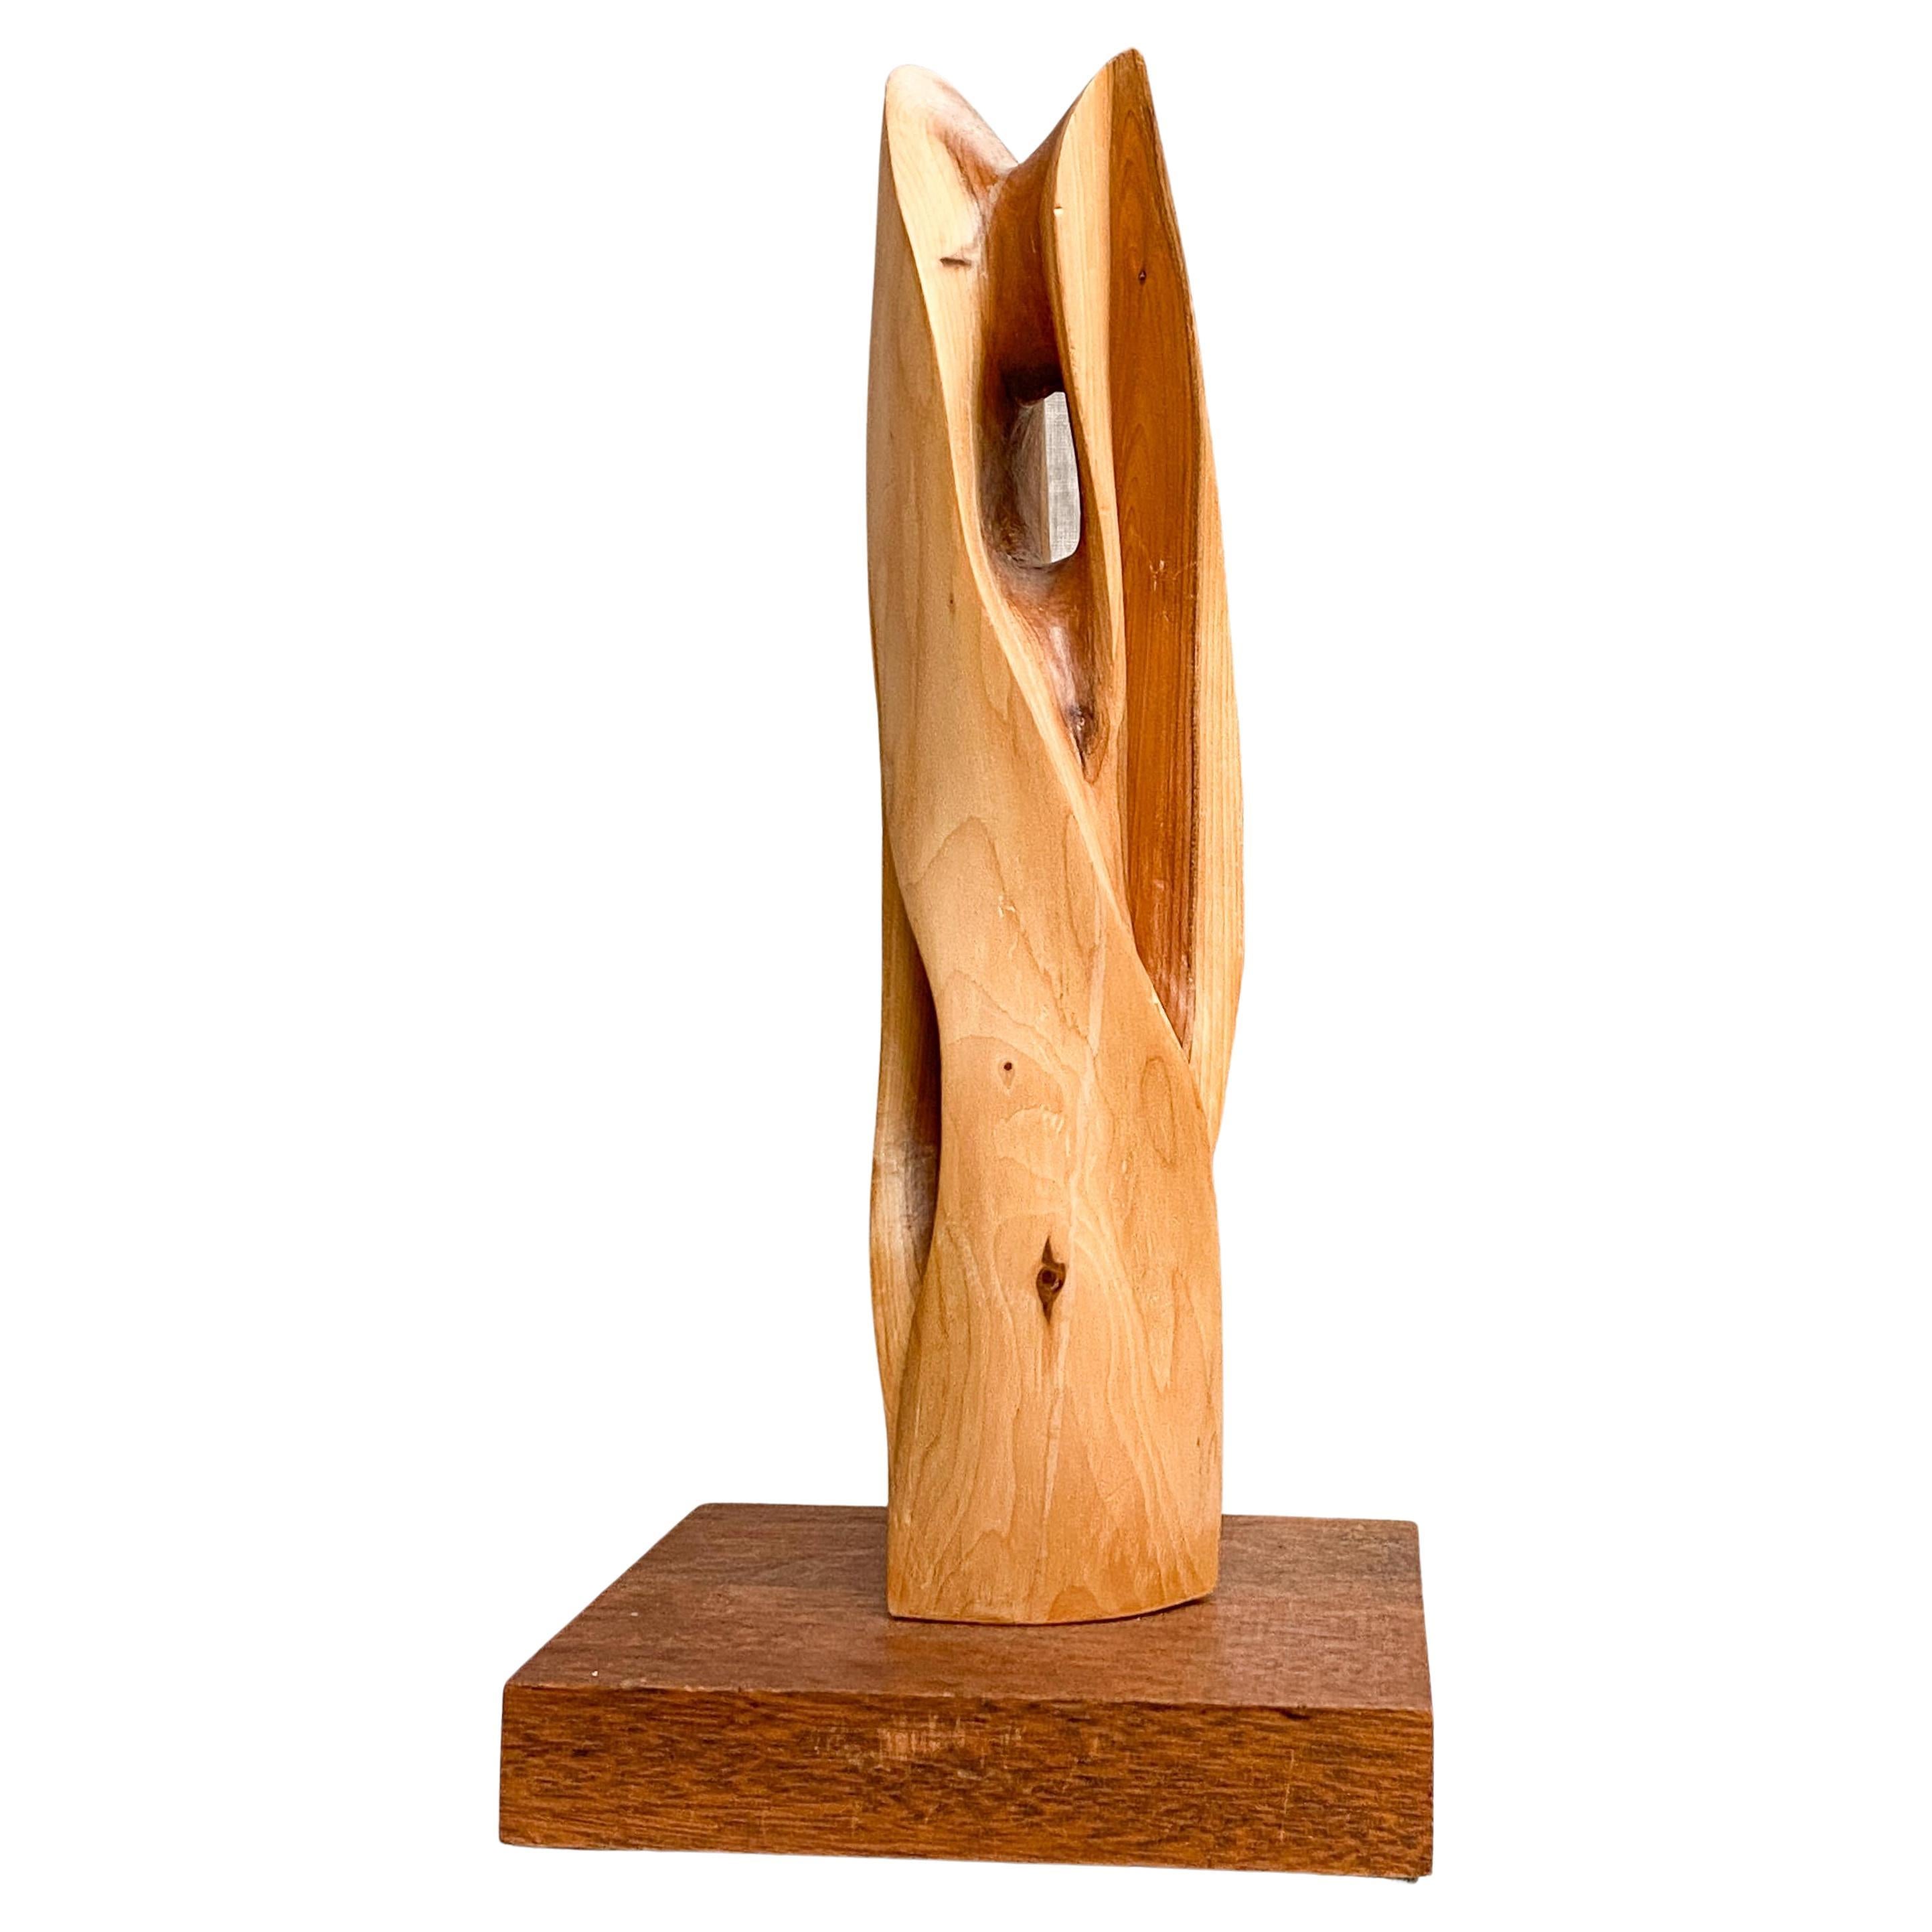 Sculpture moderniste en bois de style abstrait en forme de totem complexe sur une base en bois